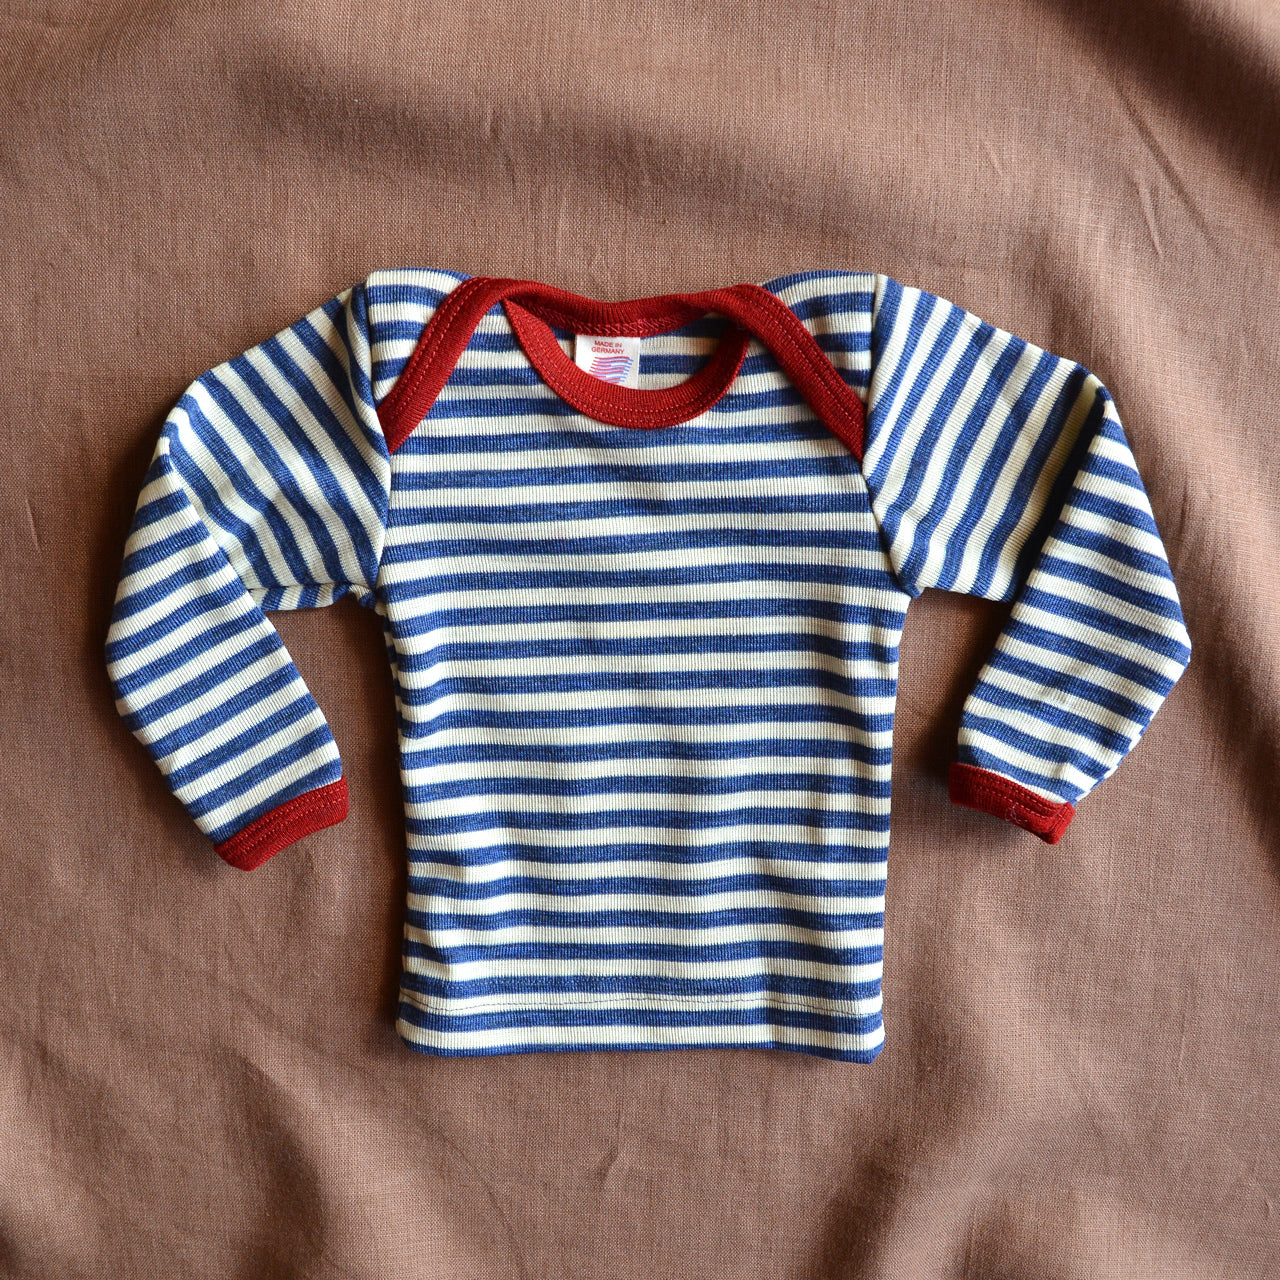 Baby Longsleeve Top in 100% Wool - Stripes (0-3y)